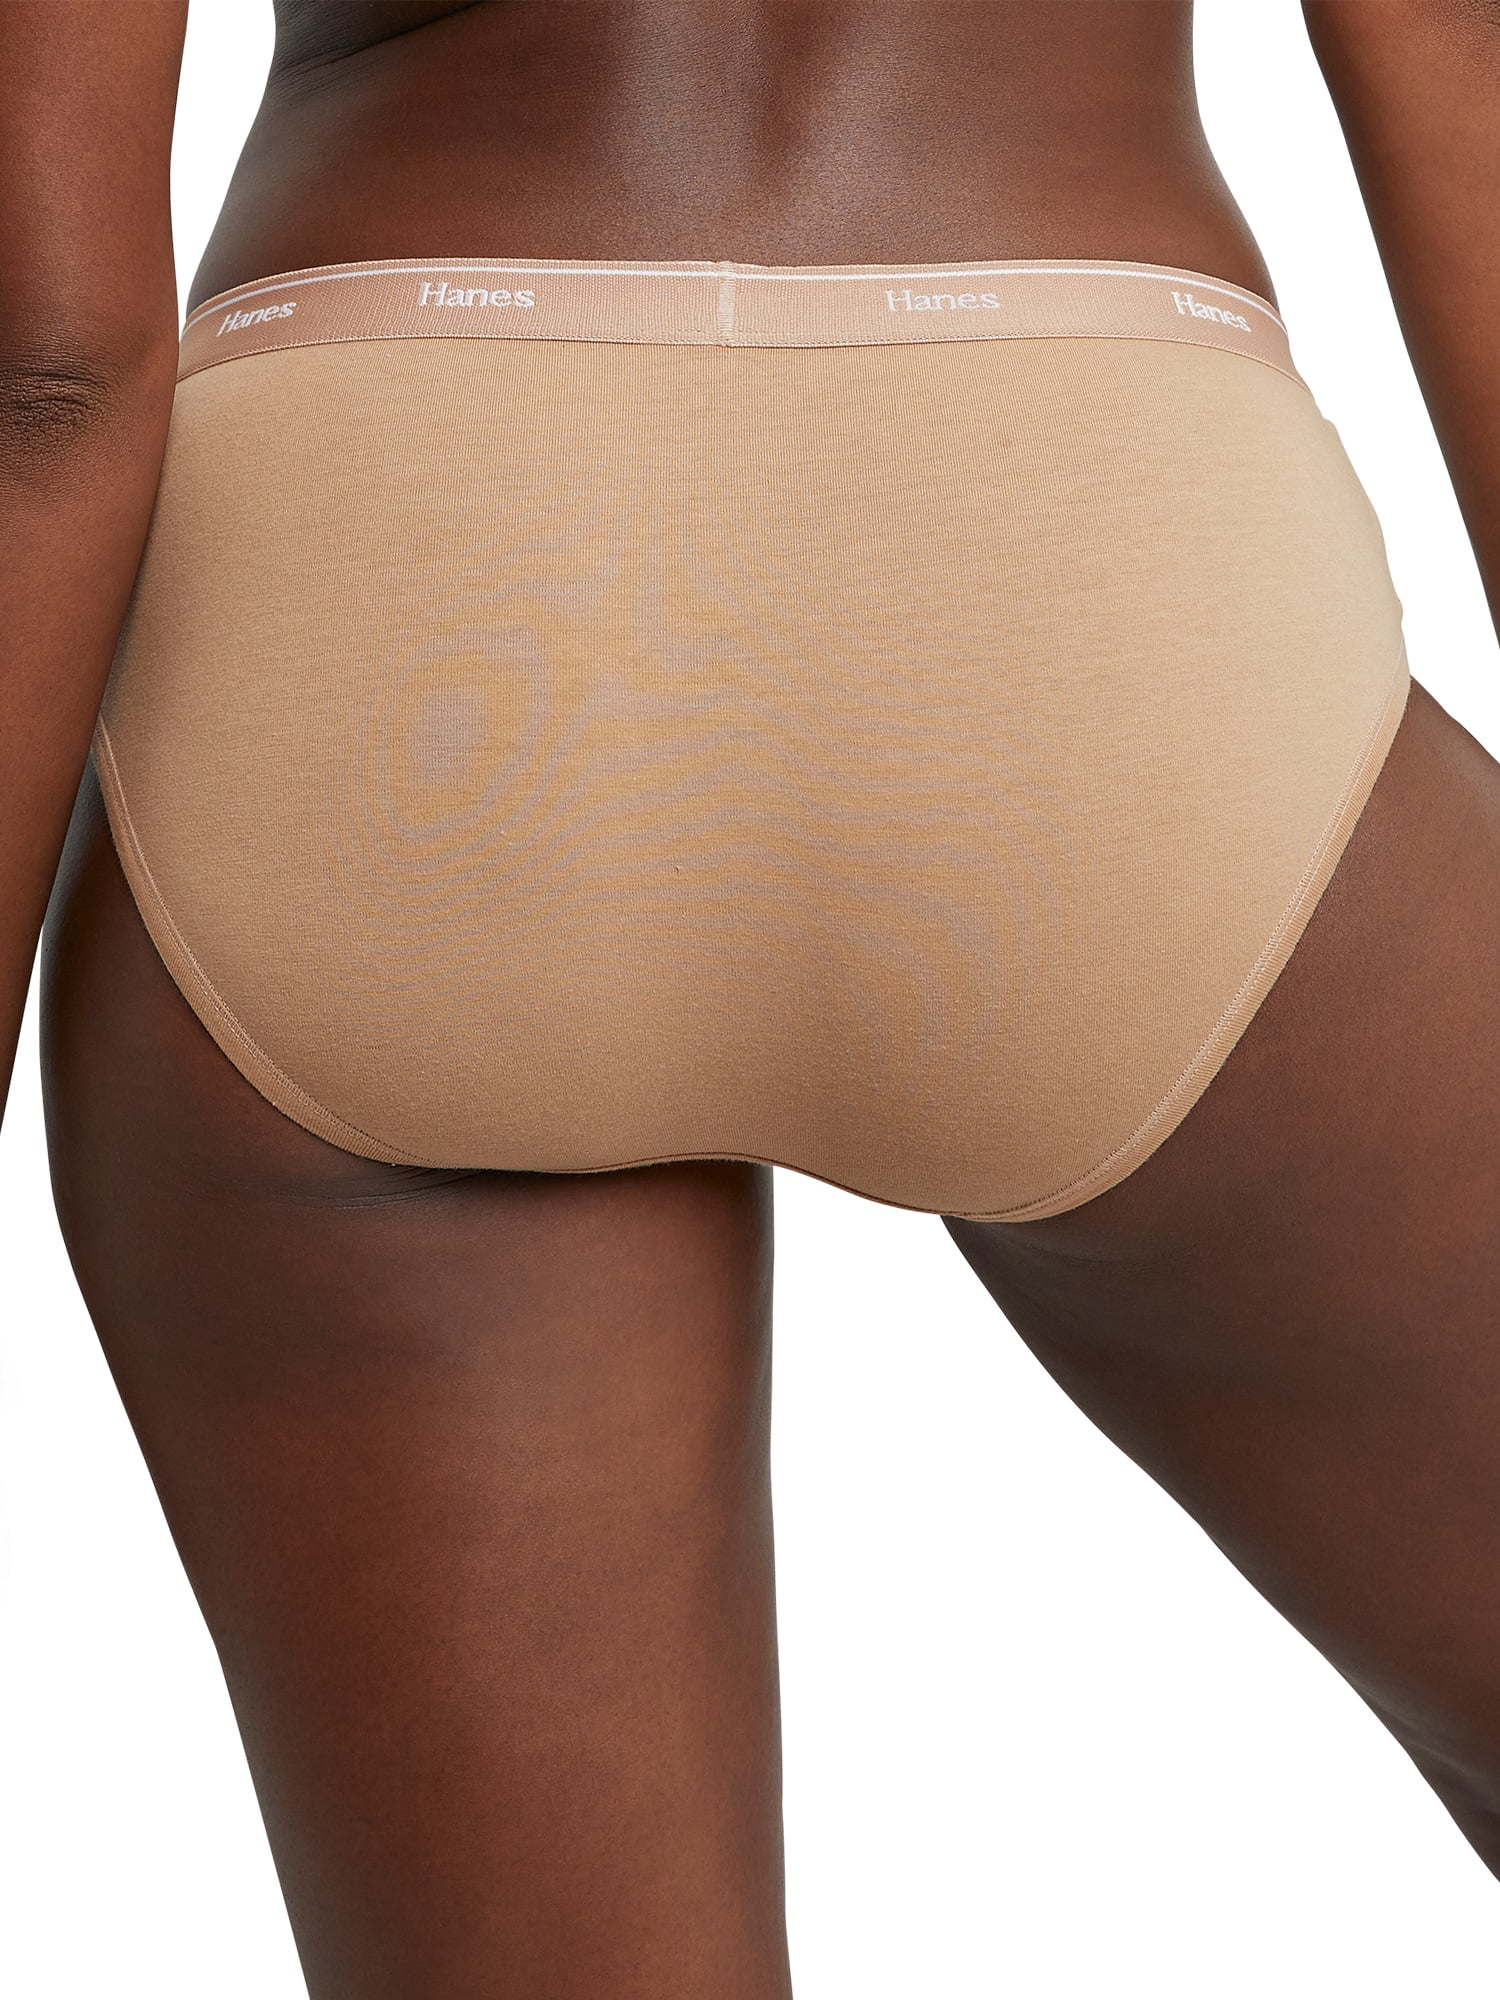 Buy Hanes 6 pack Women's Body Creations Microfiber Hipster Panties